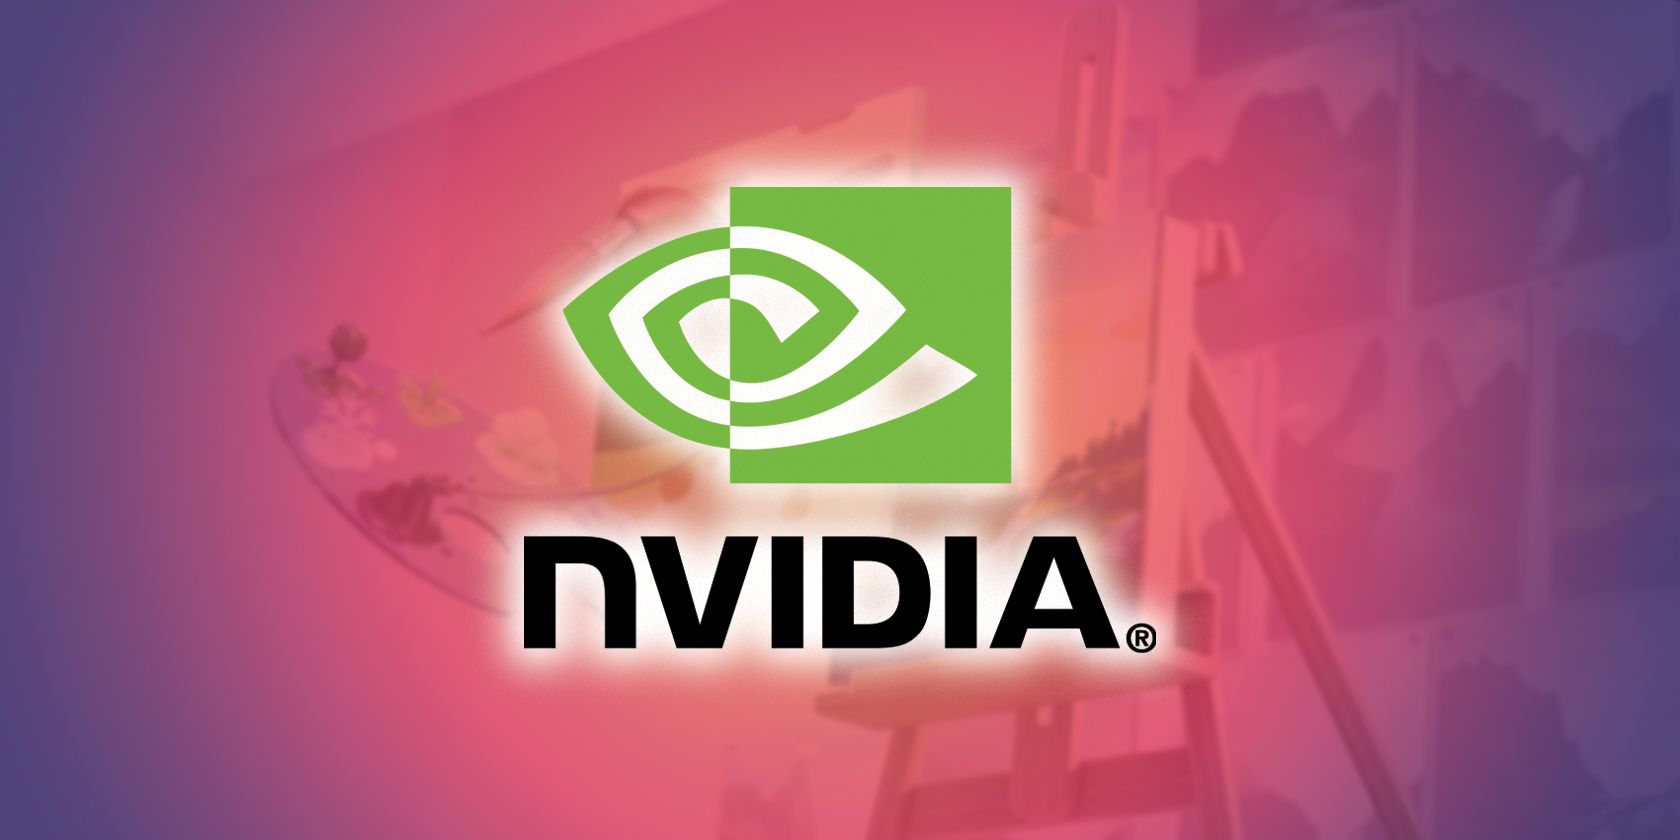 nvidia canvas app and nvidia logo